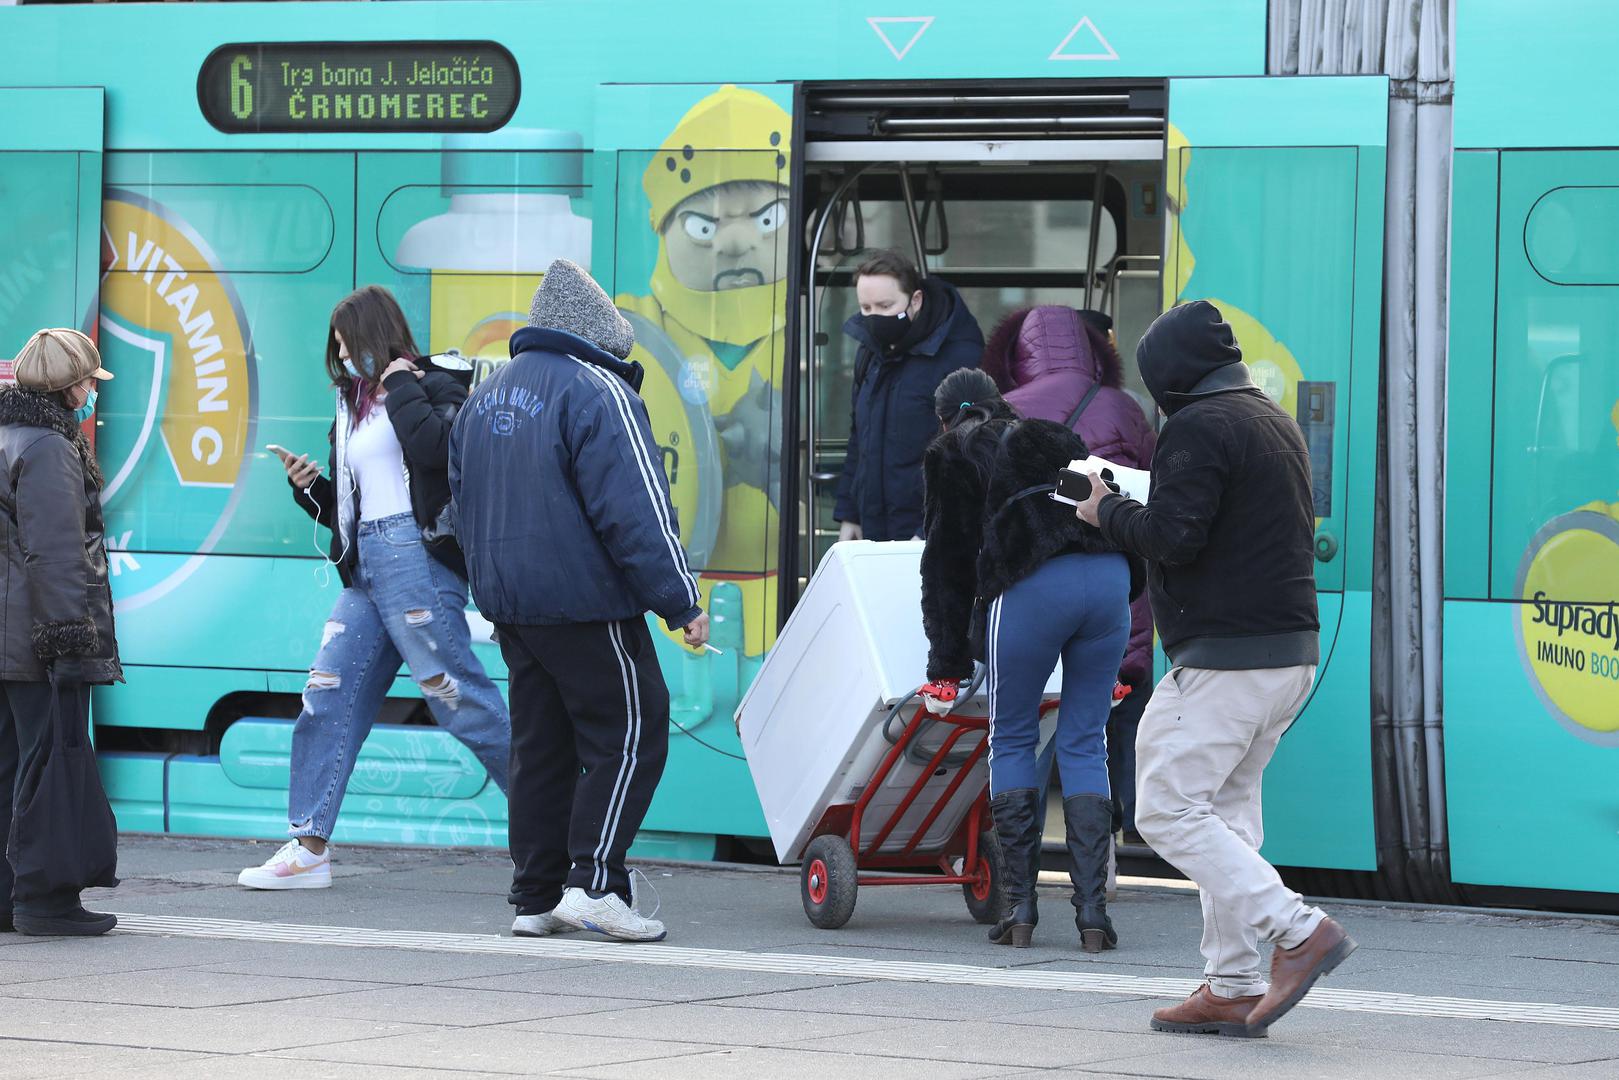 Jedan je par uspješno izveo akciju prebacivanja perilice rublja u tramvaj.